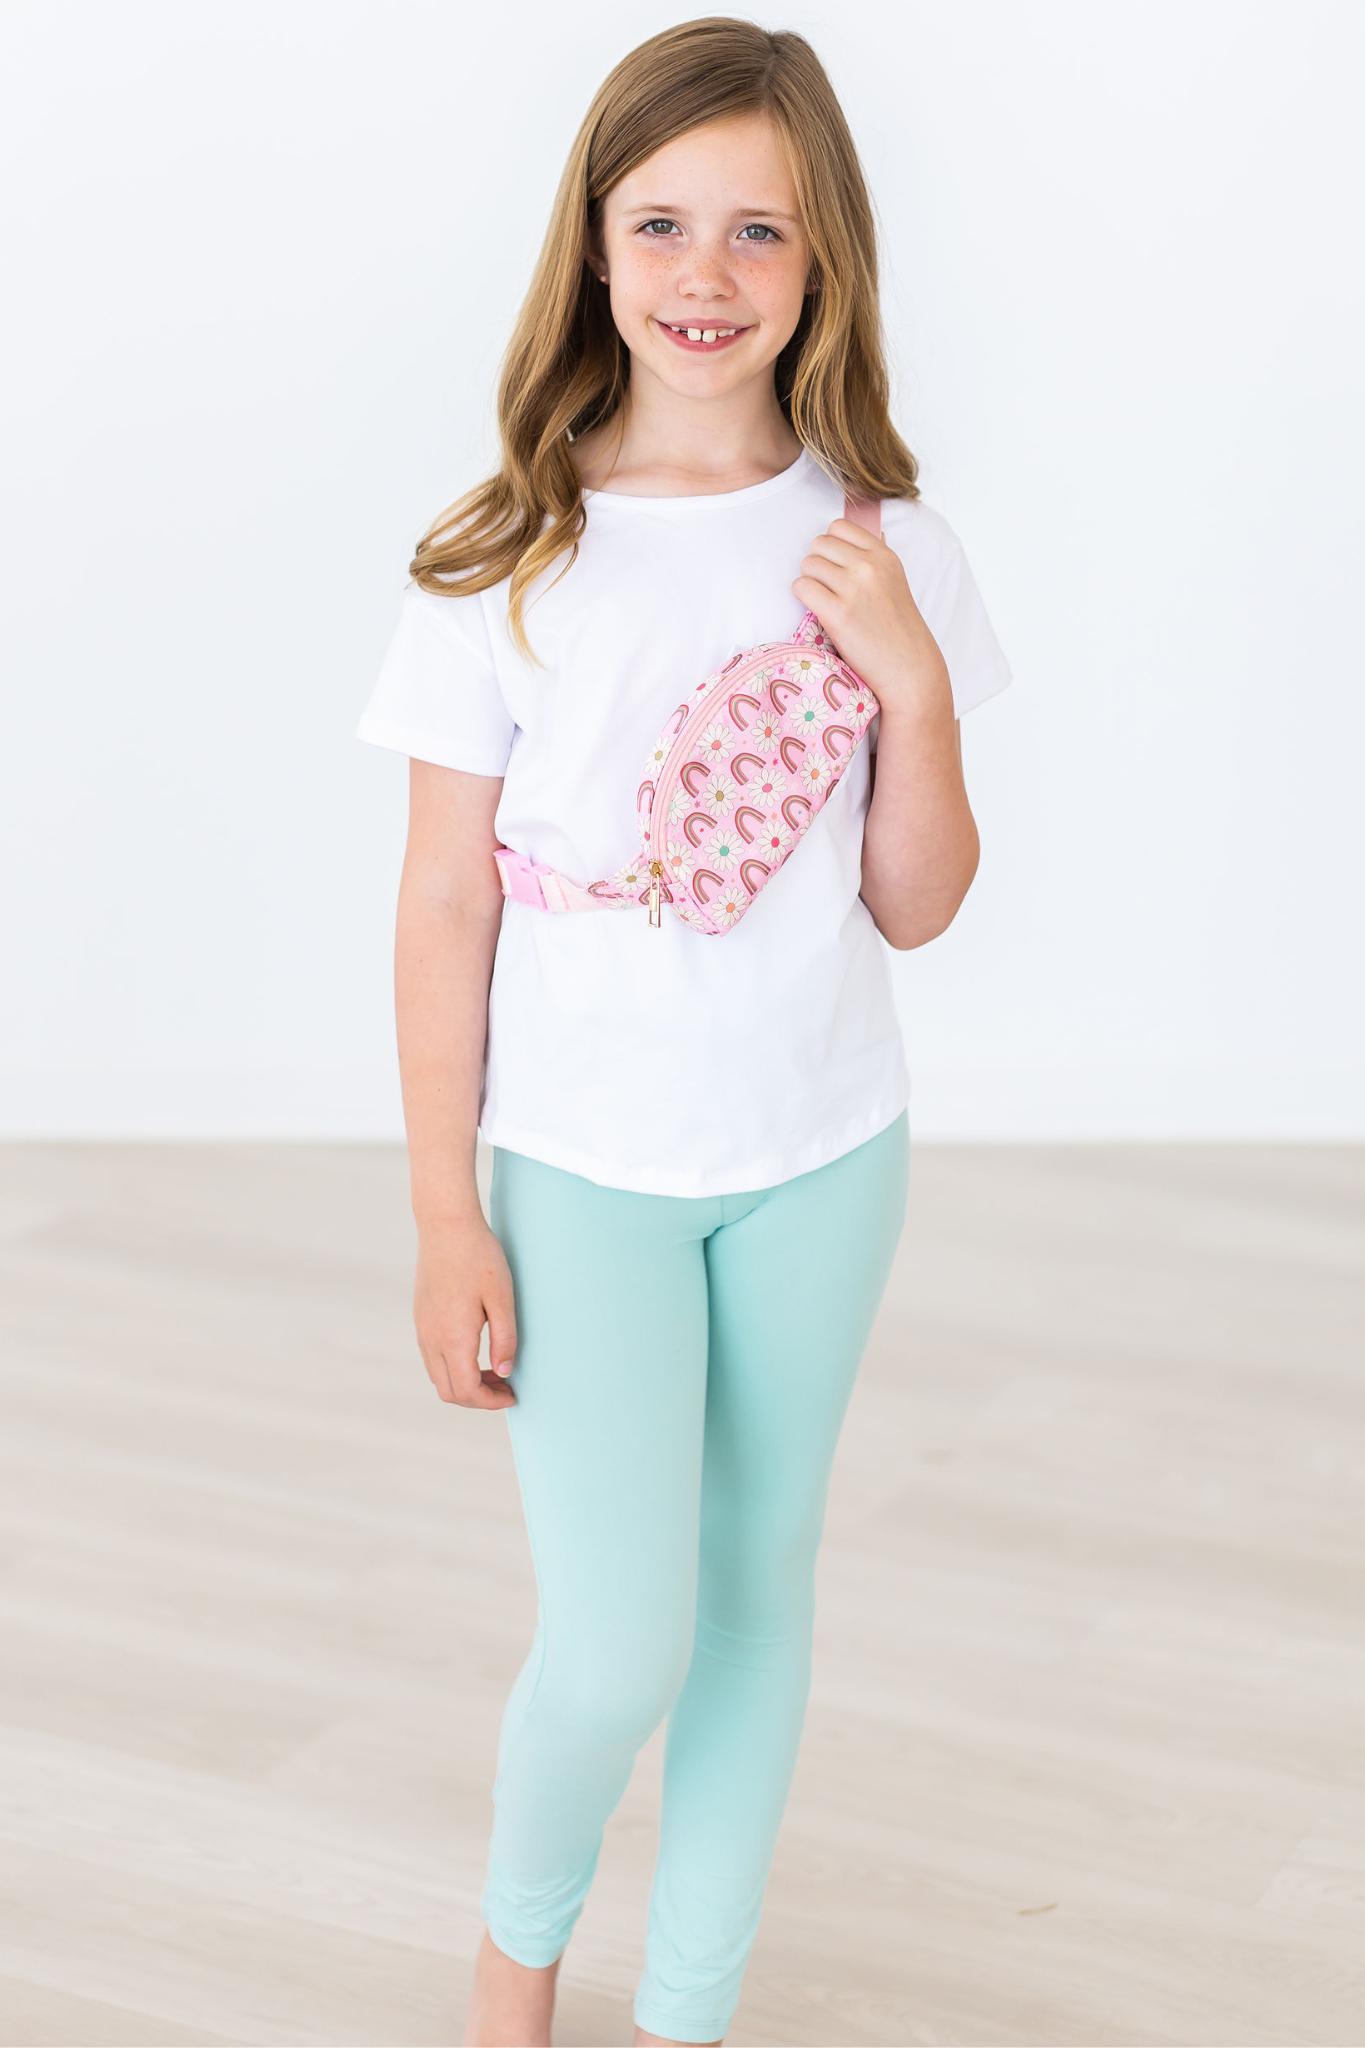 Girls Leggings  Shop Leggings For Girls & Toddlers Online - Mila & Rose -  Mila & Rose ®